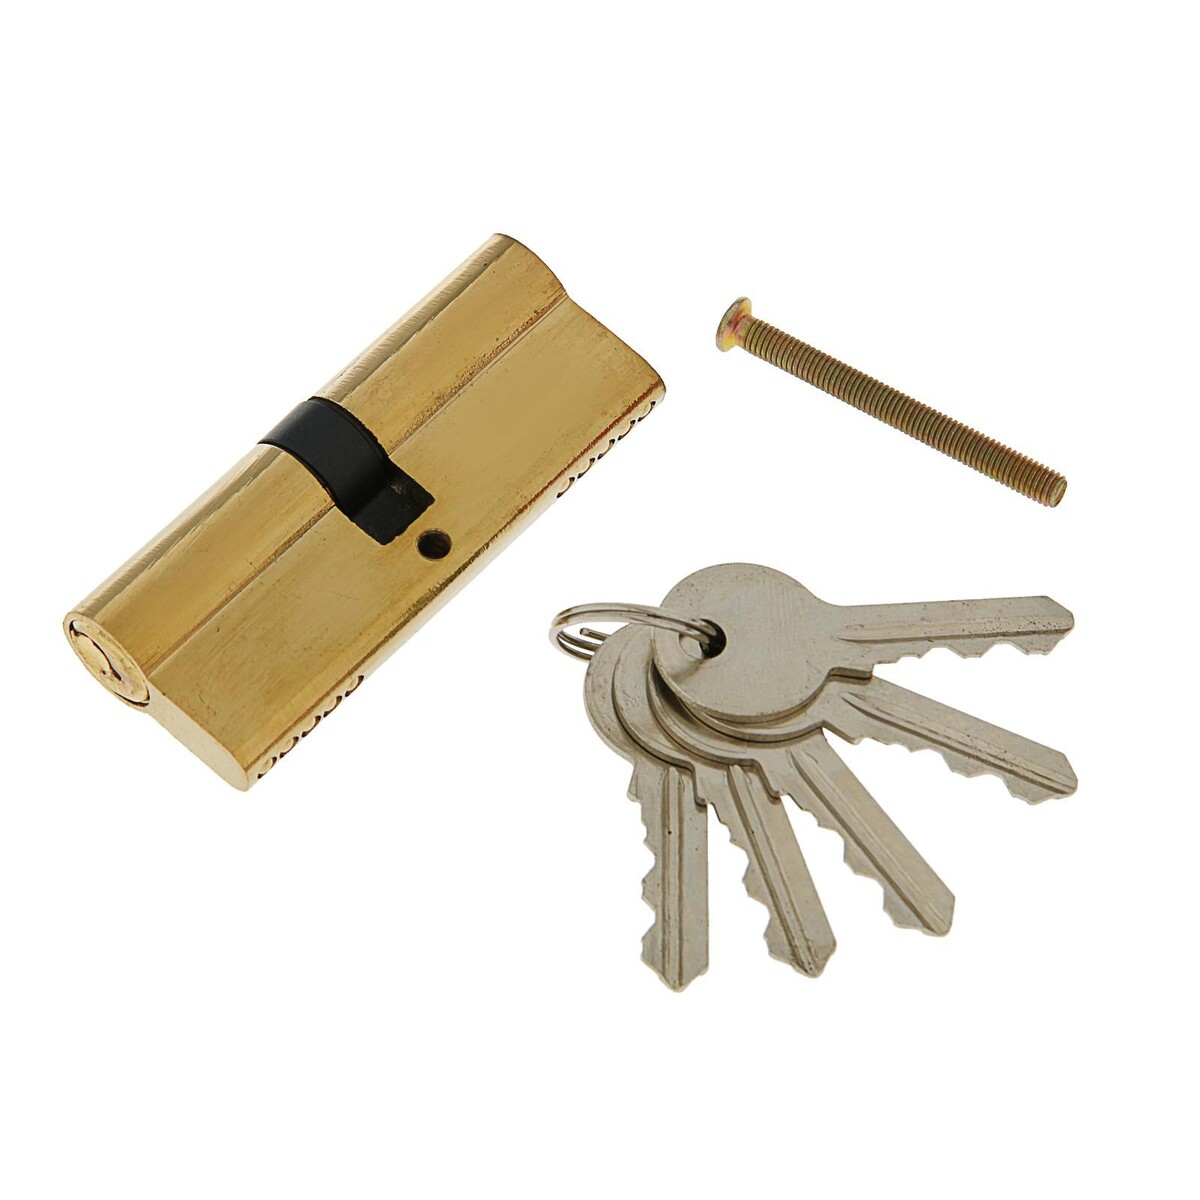 Цилиндровый механизм, 80 мм, английский ключ, 5 ключей, цвет золото замок навесной аллюр вс1ч 4506 1418 блистер цилиндровый 5 ключей